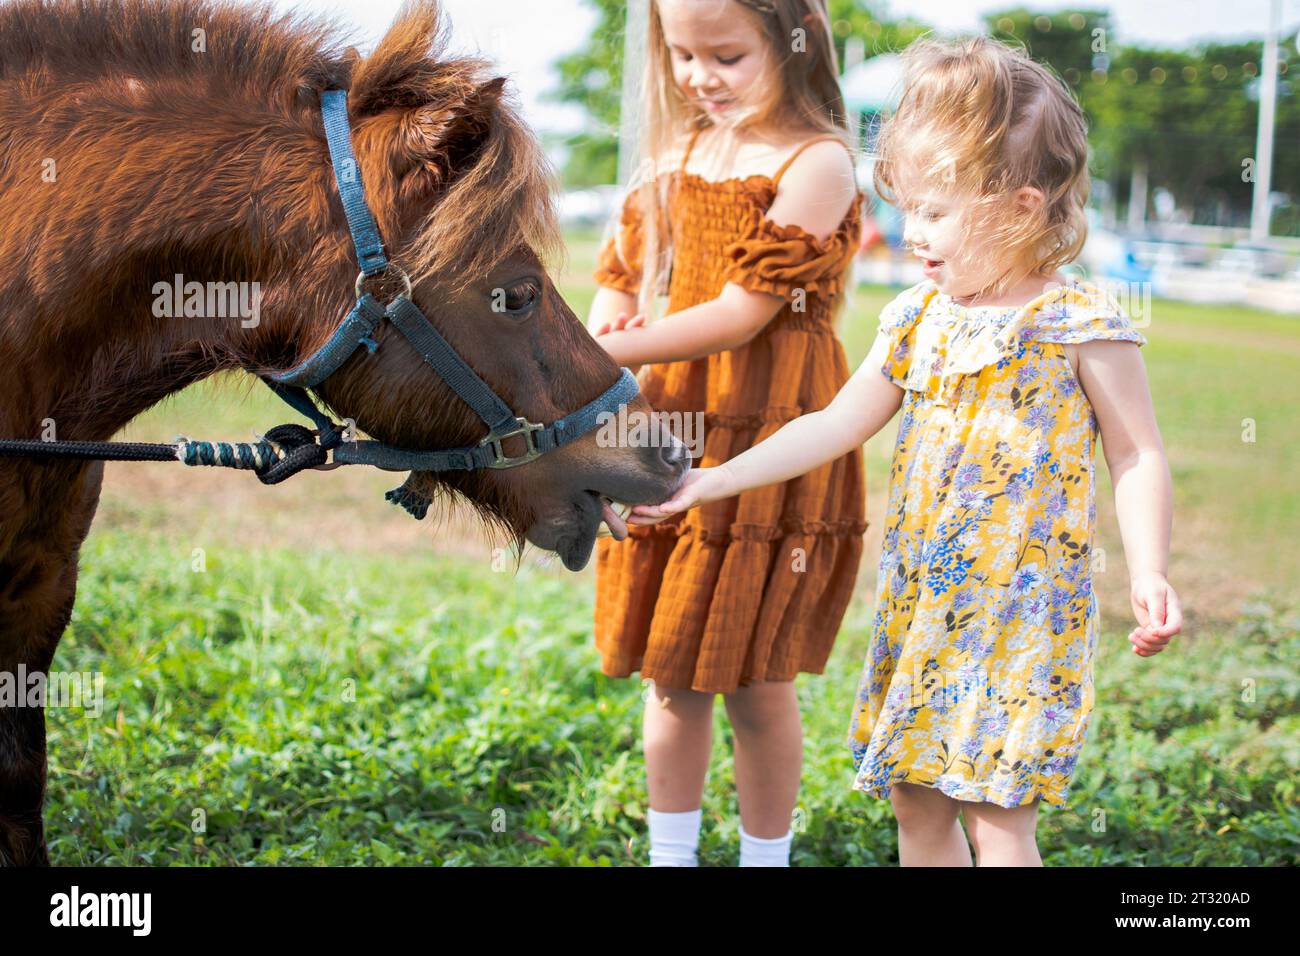 Zwei kleine Mädchen füttern ein Pony. Bauernhof und Kinder. Herbstspaß-Aktivitäten für Kinder auf dem Bauernhof. Fütterung von Nutztieren. Stockfoto